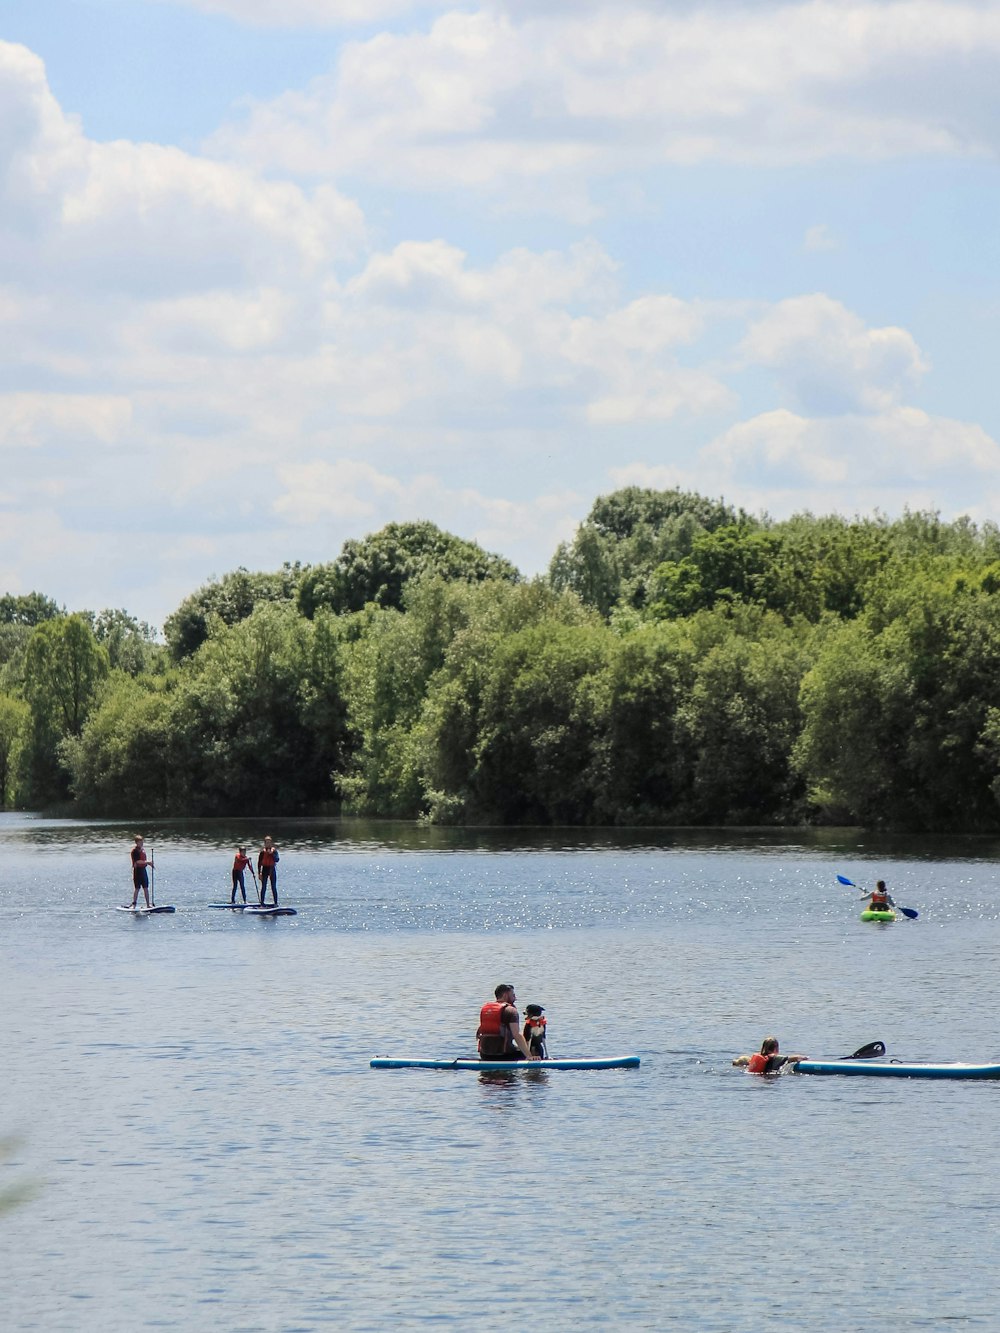 people riding on kayak near trees during daytime